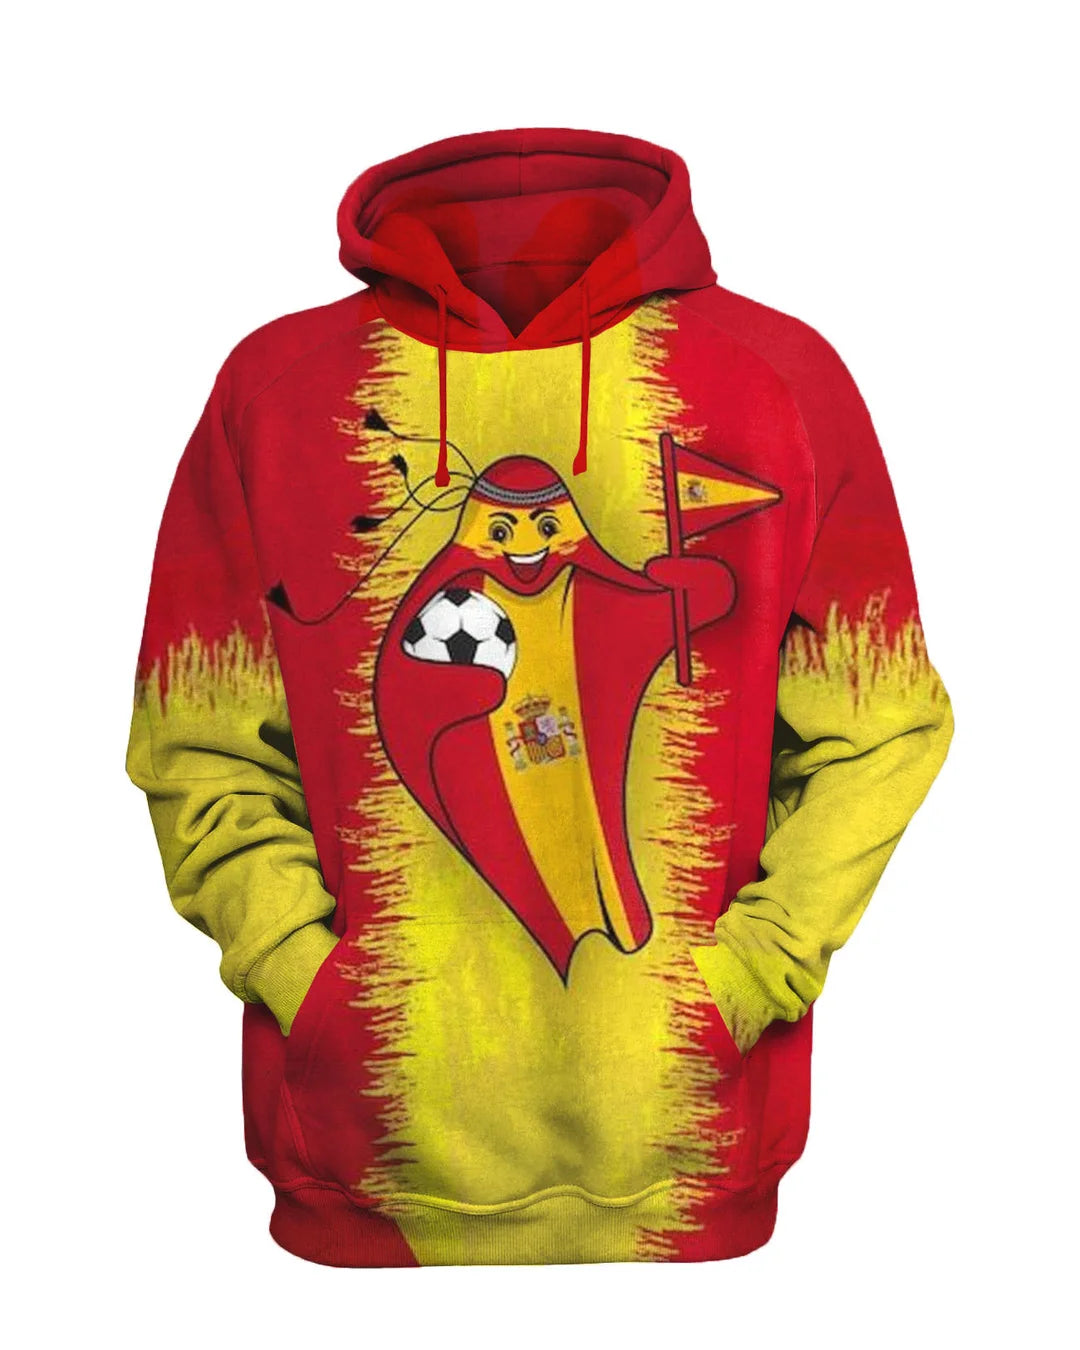 Spanish Mascot Printed Sweatshirt Set